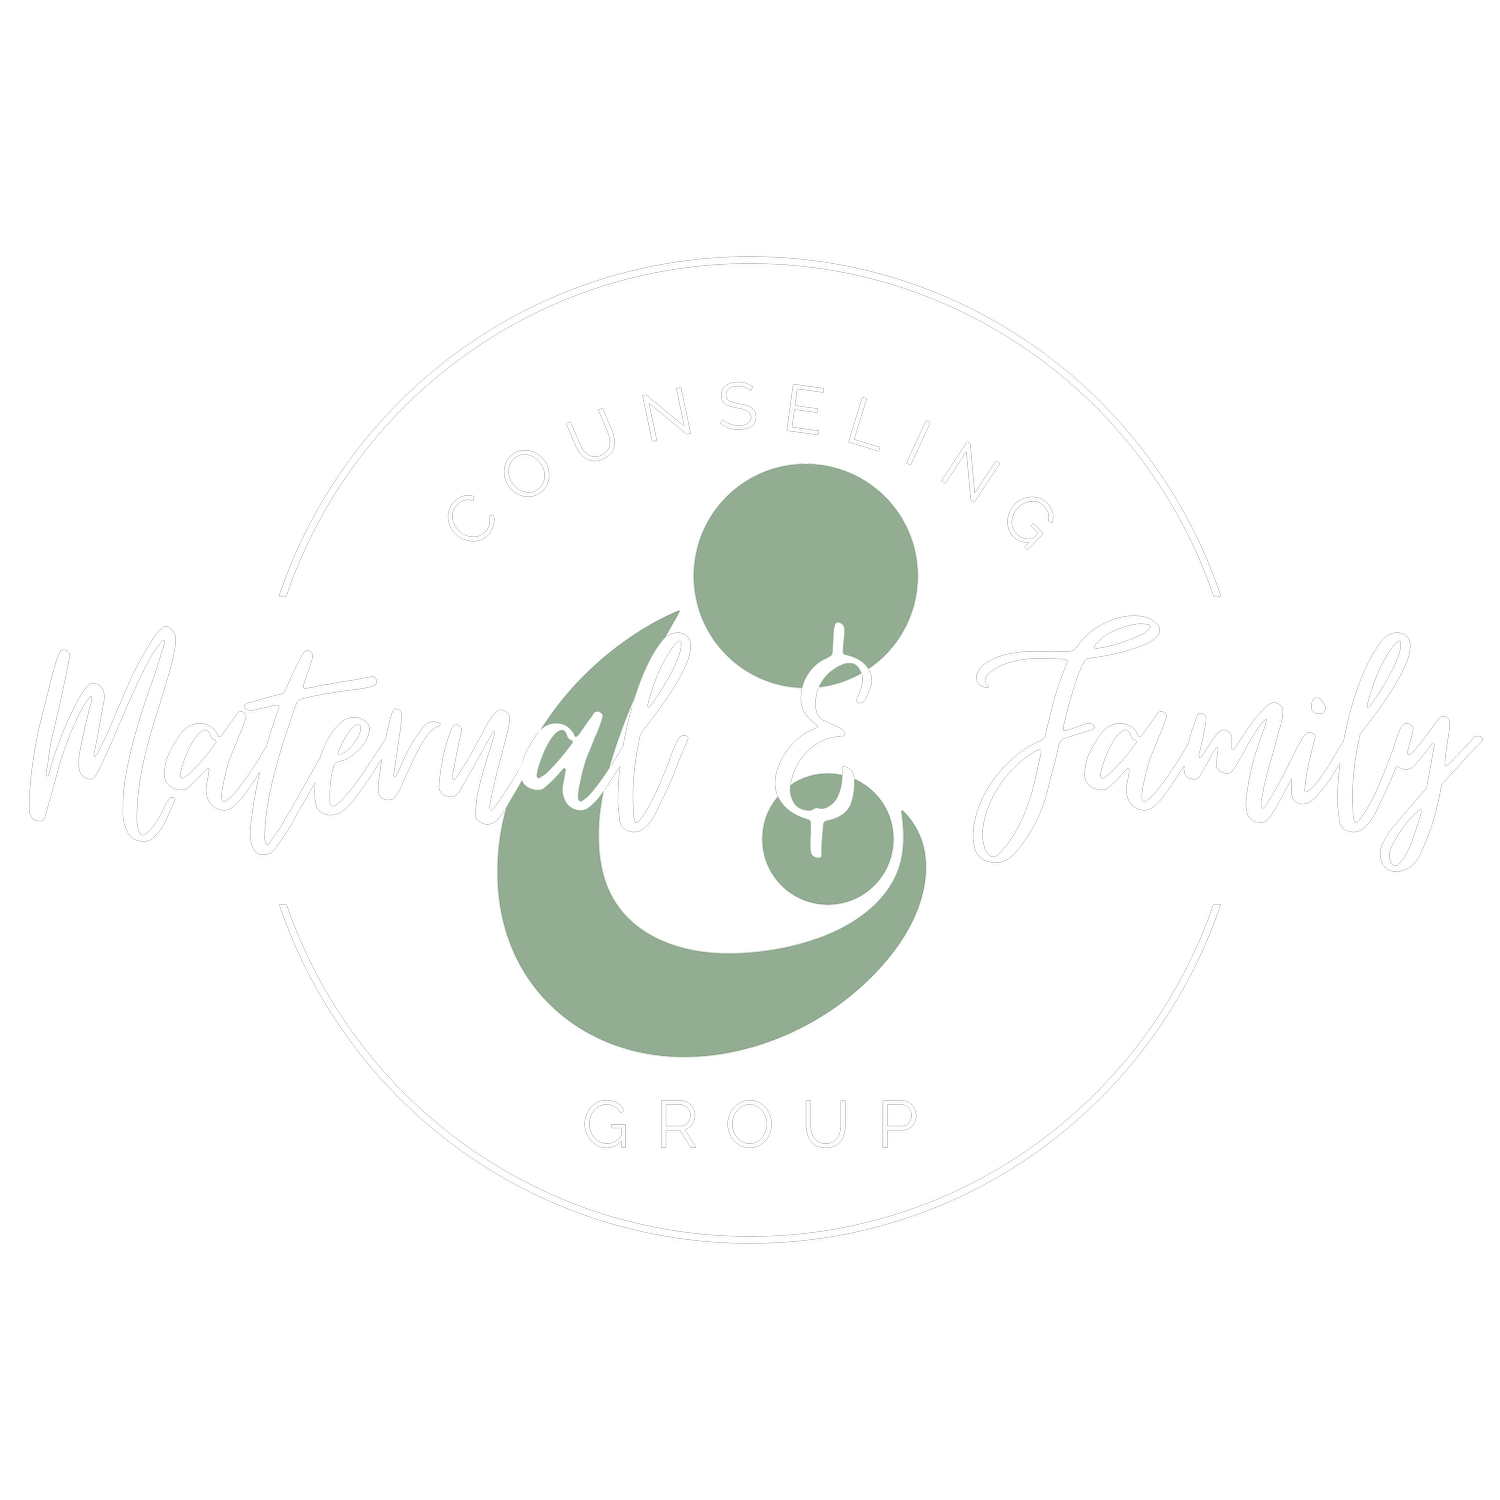 maternalfamilycounseling.com